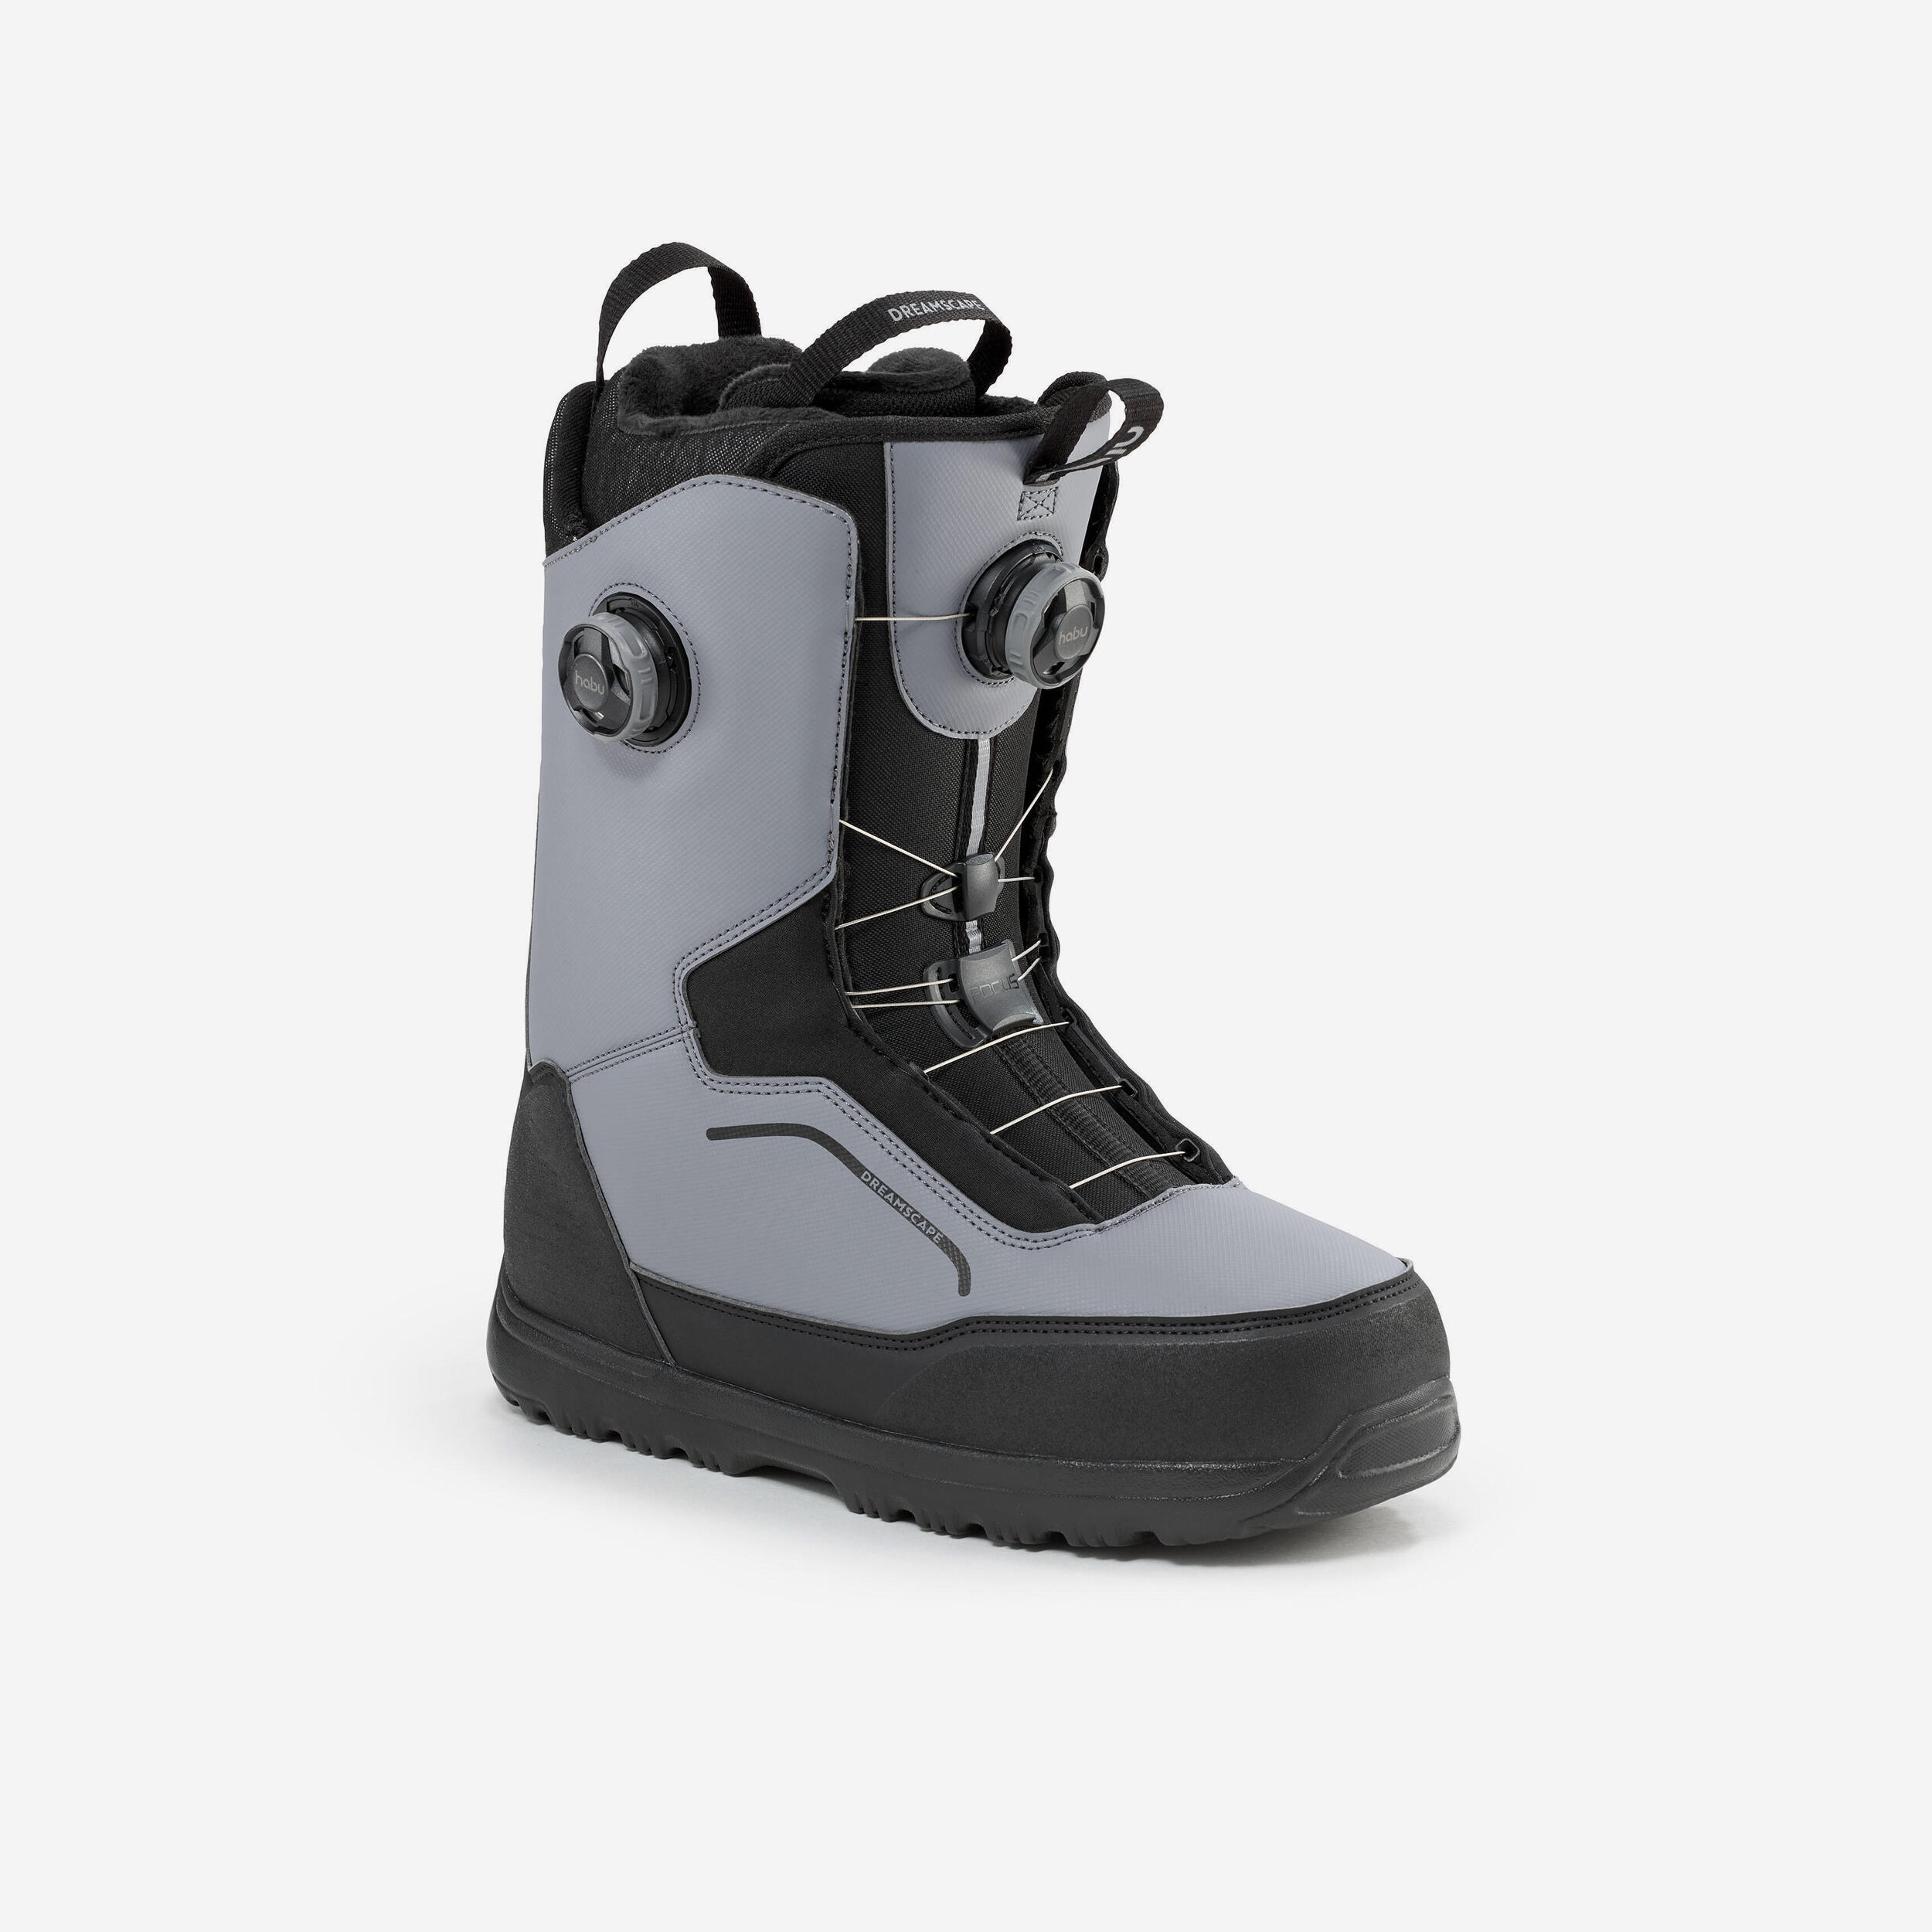 Boots Snowboard All Road 900 Habu®fitsystem Rotita Dubla, Flex Rigid Gri Barbati